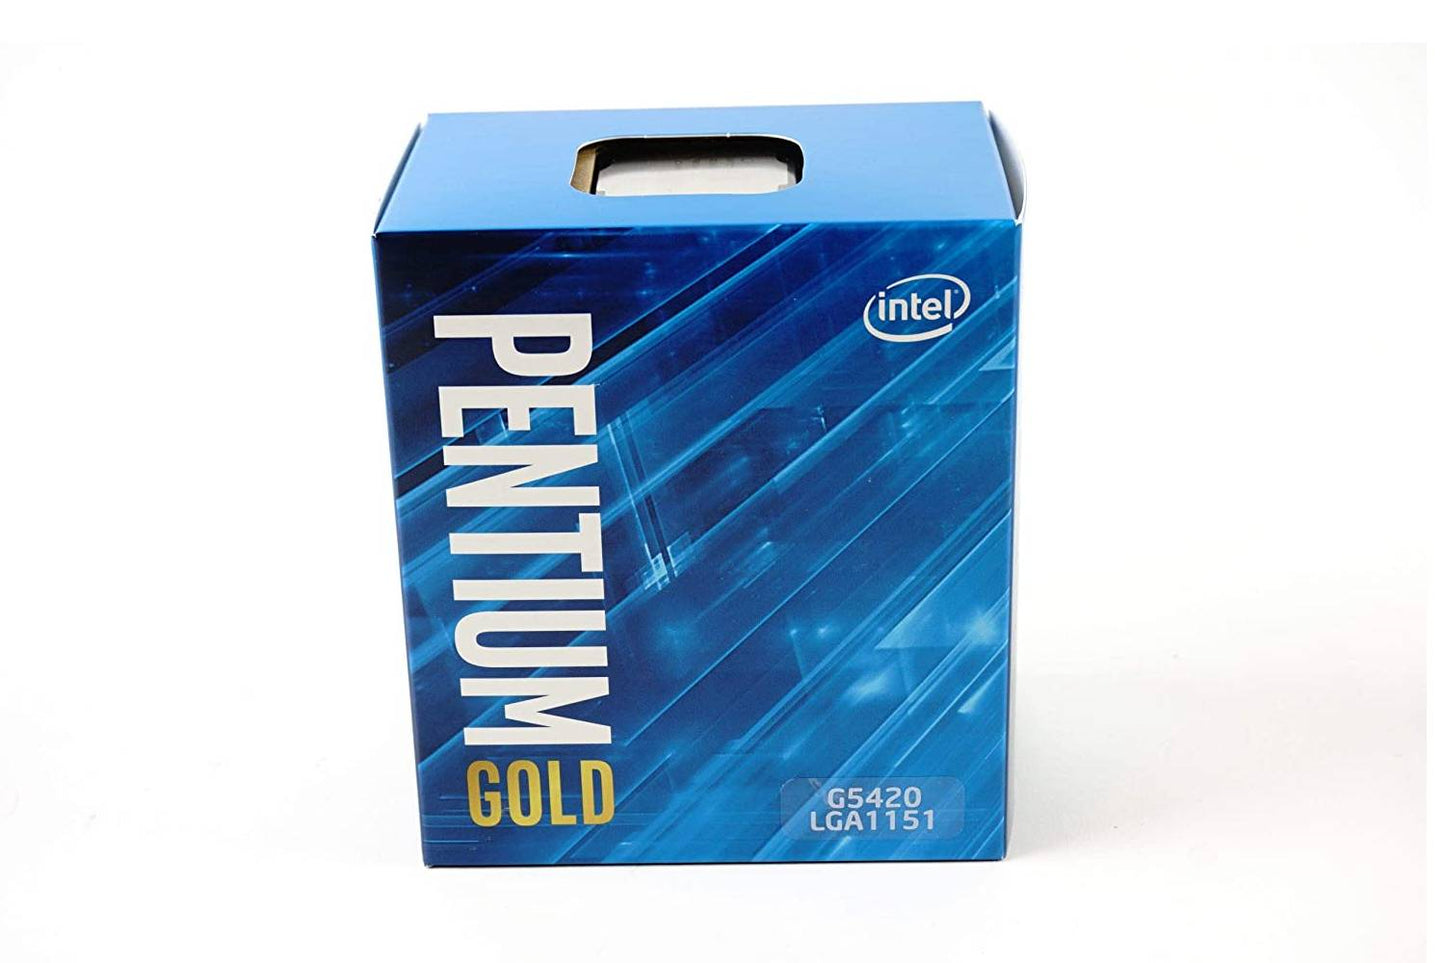 intel pentium gold g5420 processor 4m cache 3.80ghz CPU